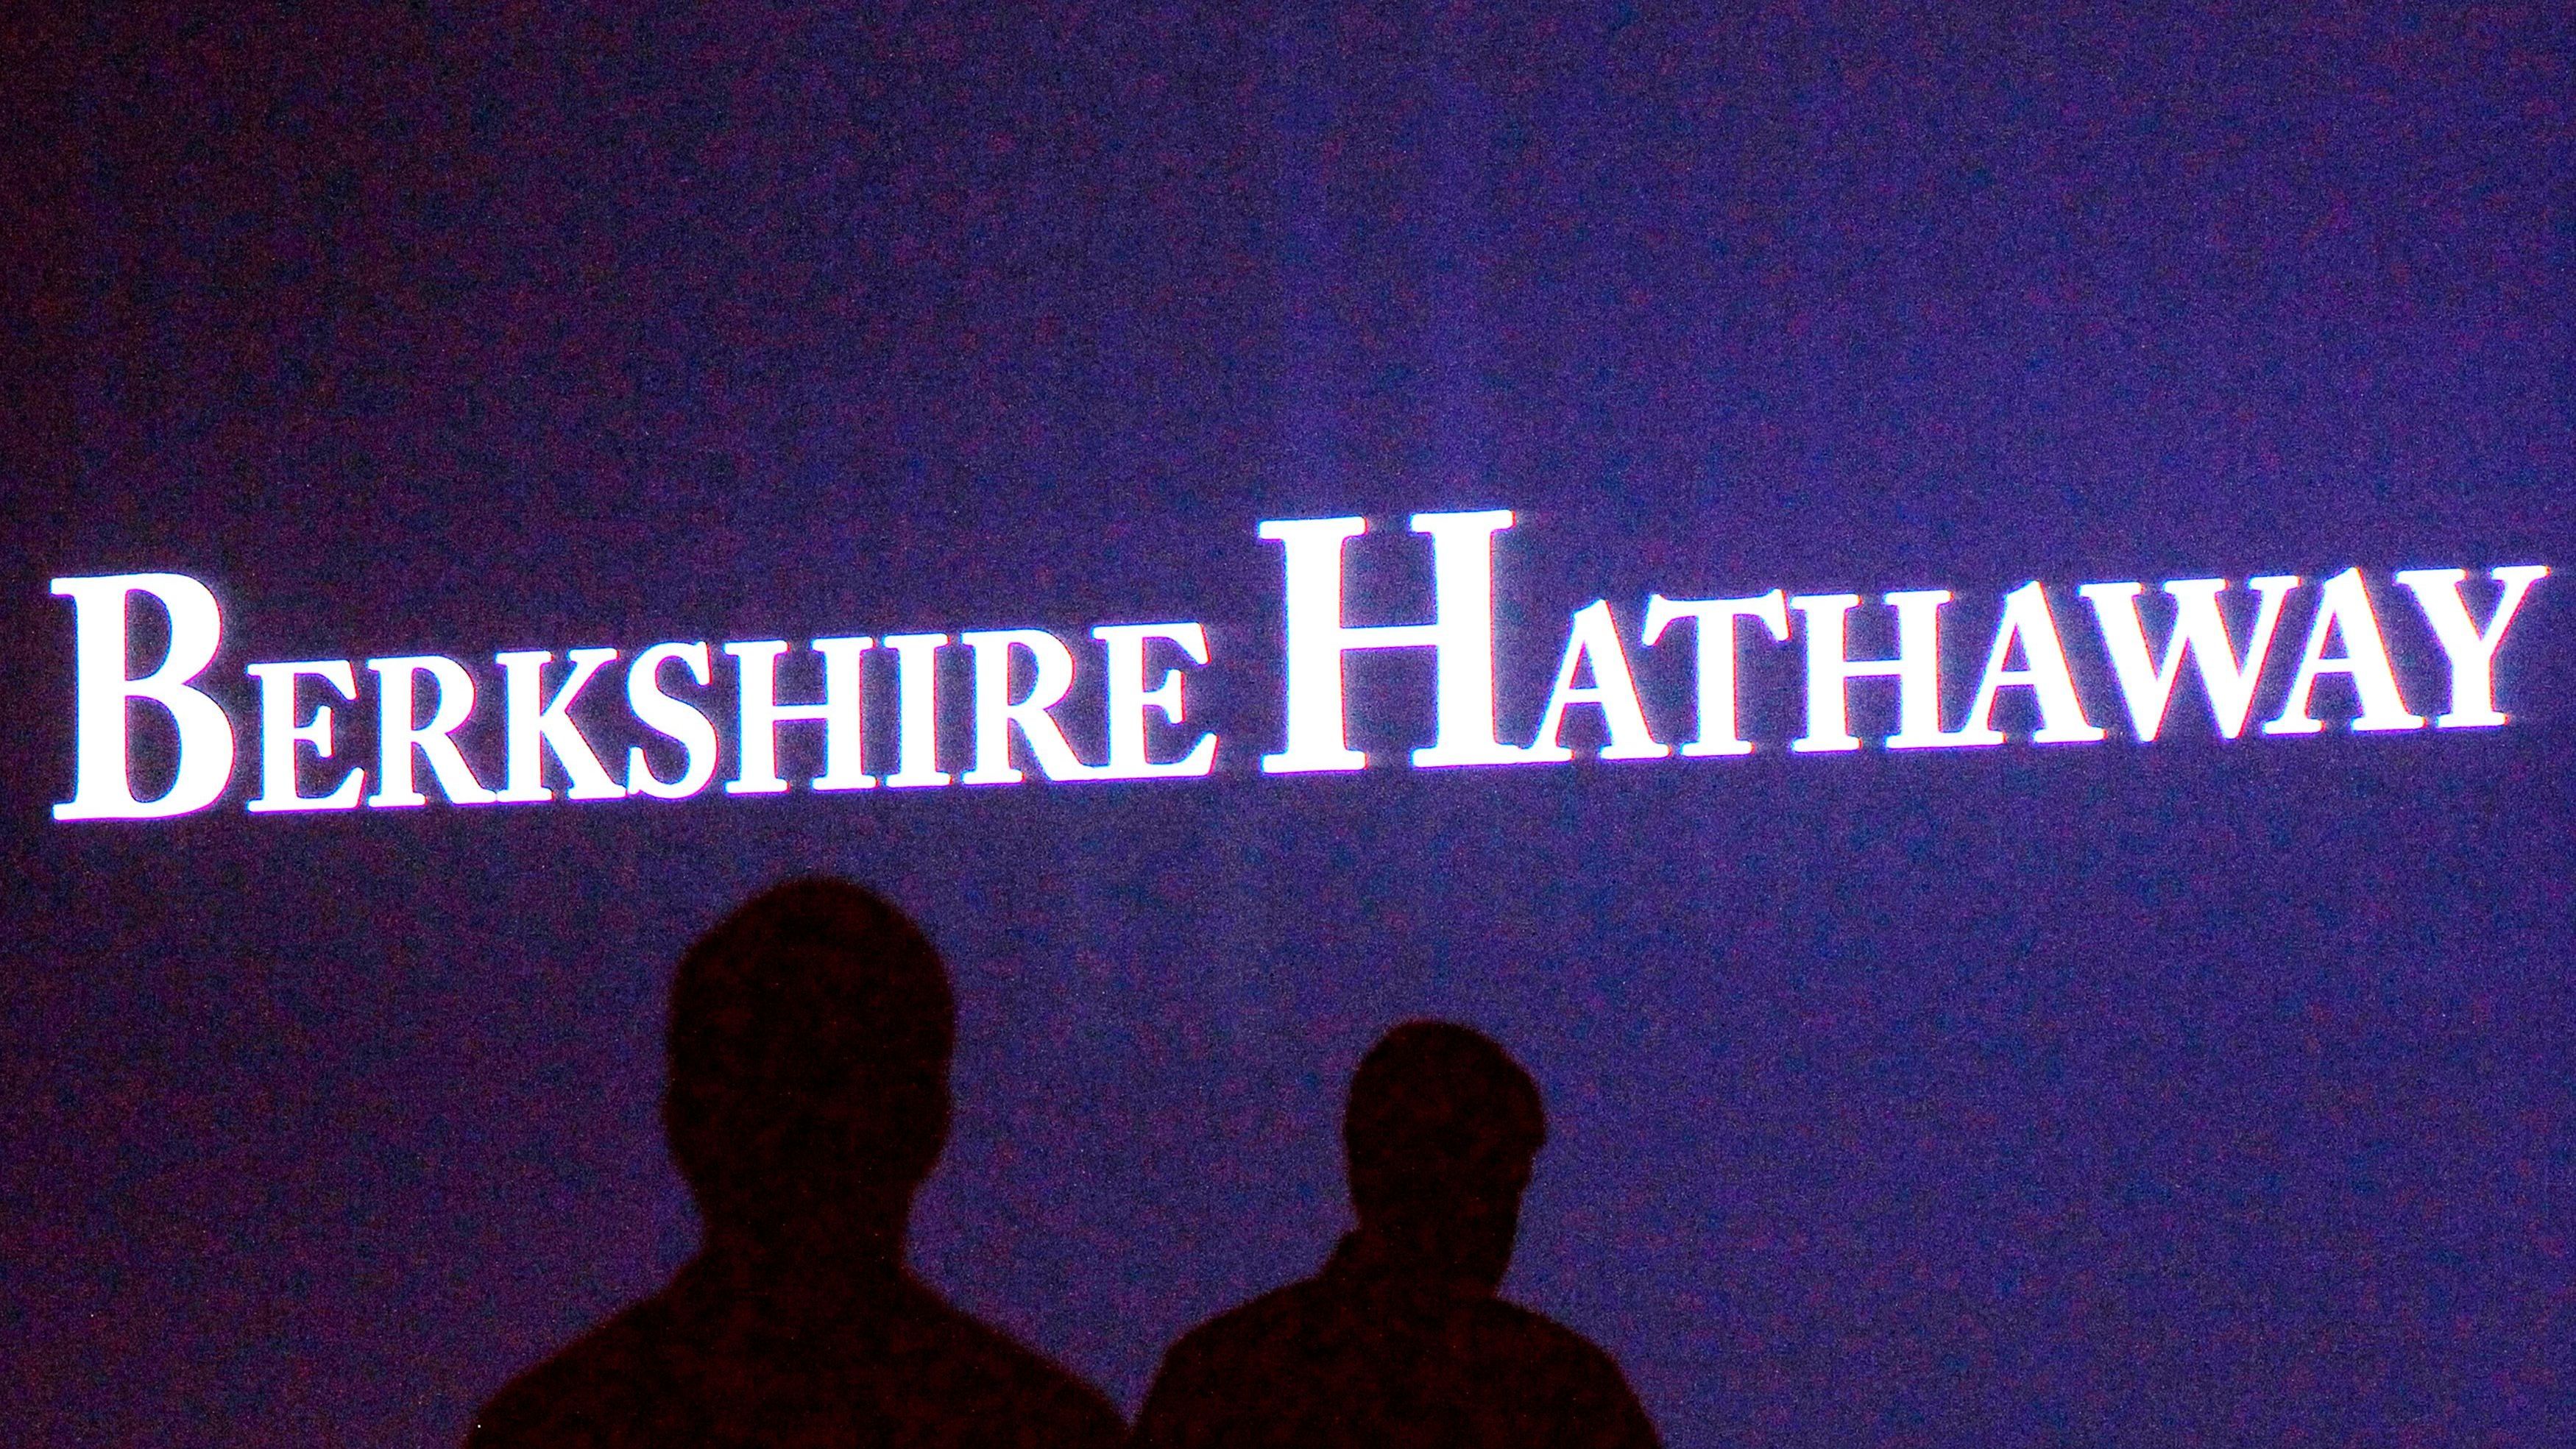 Berkshire Hathaway ist eine amerikanische Holdinggesellschaft, die unter anderem für Energieversorgung und Finanzdienstleistungen zuständig ist. Mit 741,5 Milliarden US-Dollar landet sie auf Platz sieben.